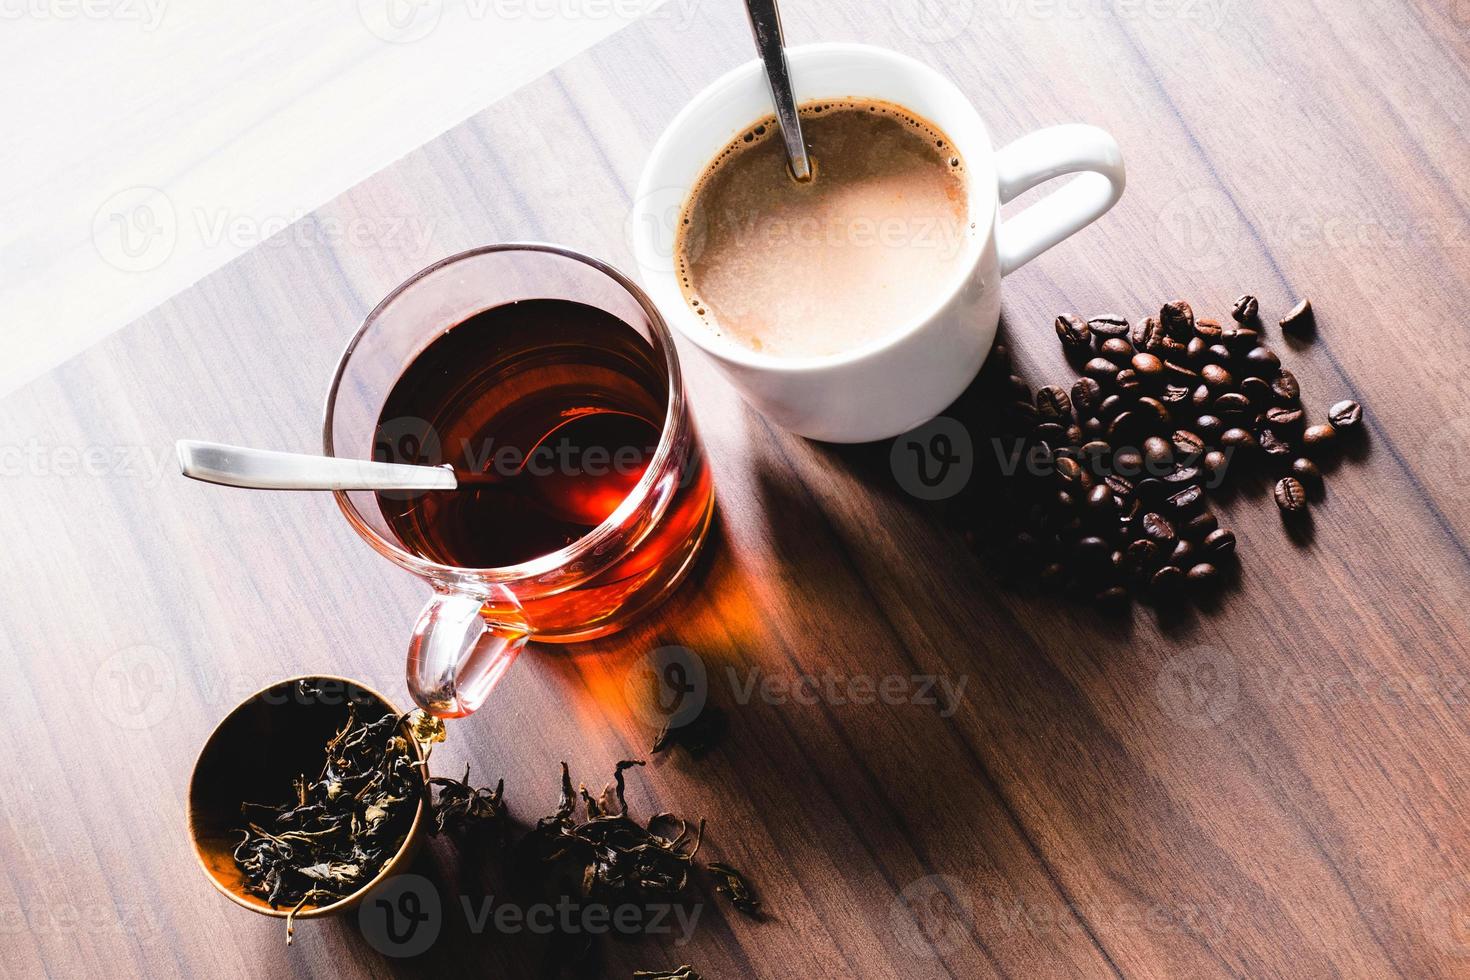 kaffee und tee mit kaffeebohne und teeblättern auf holzboden. foto